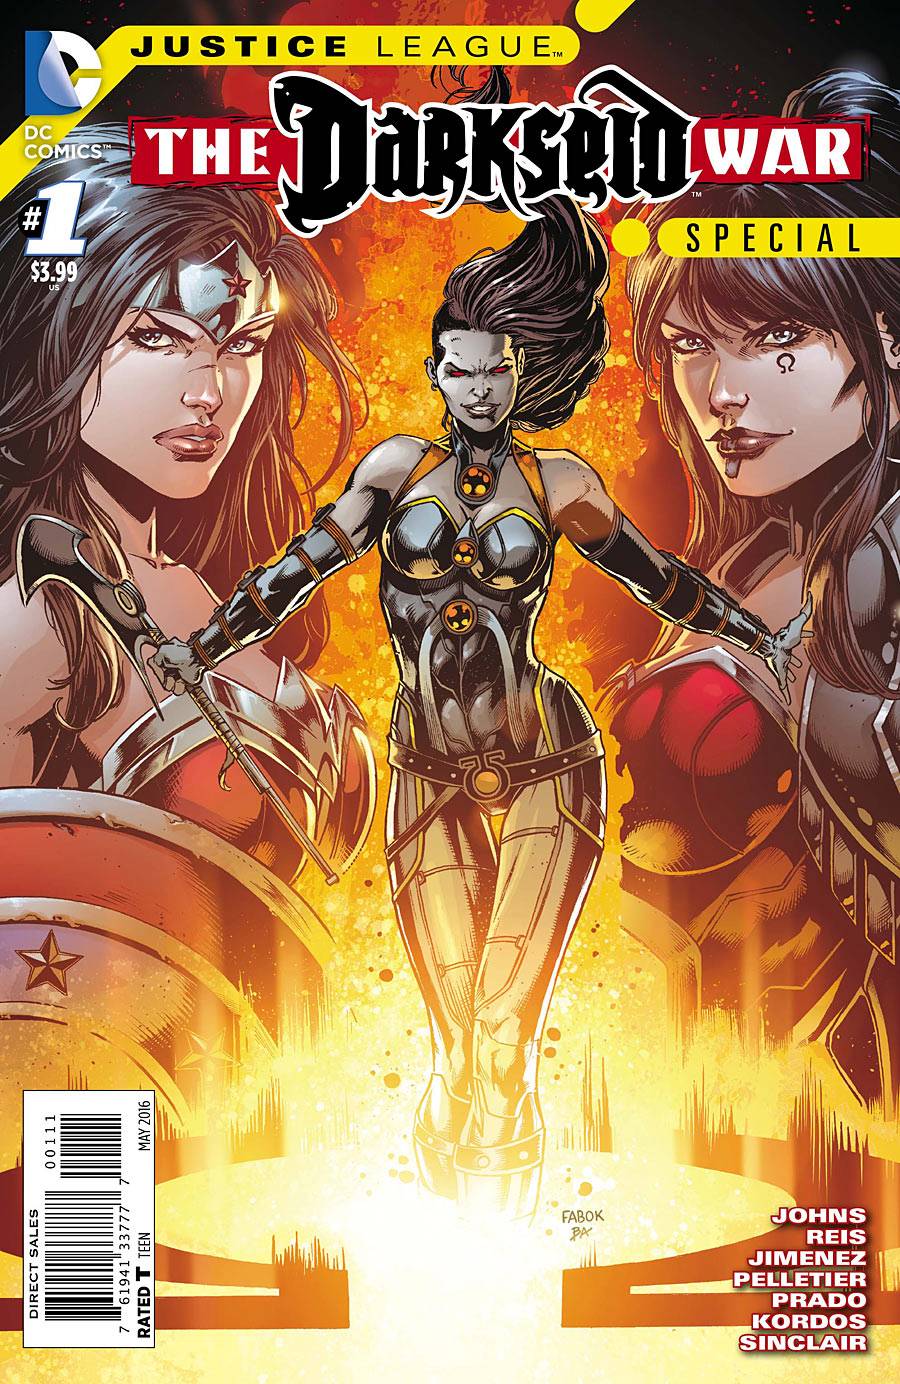 Justice League Darkseid War Special #1